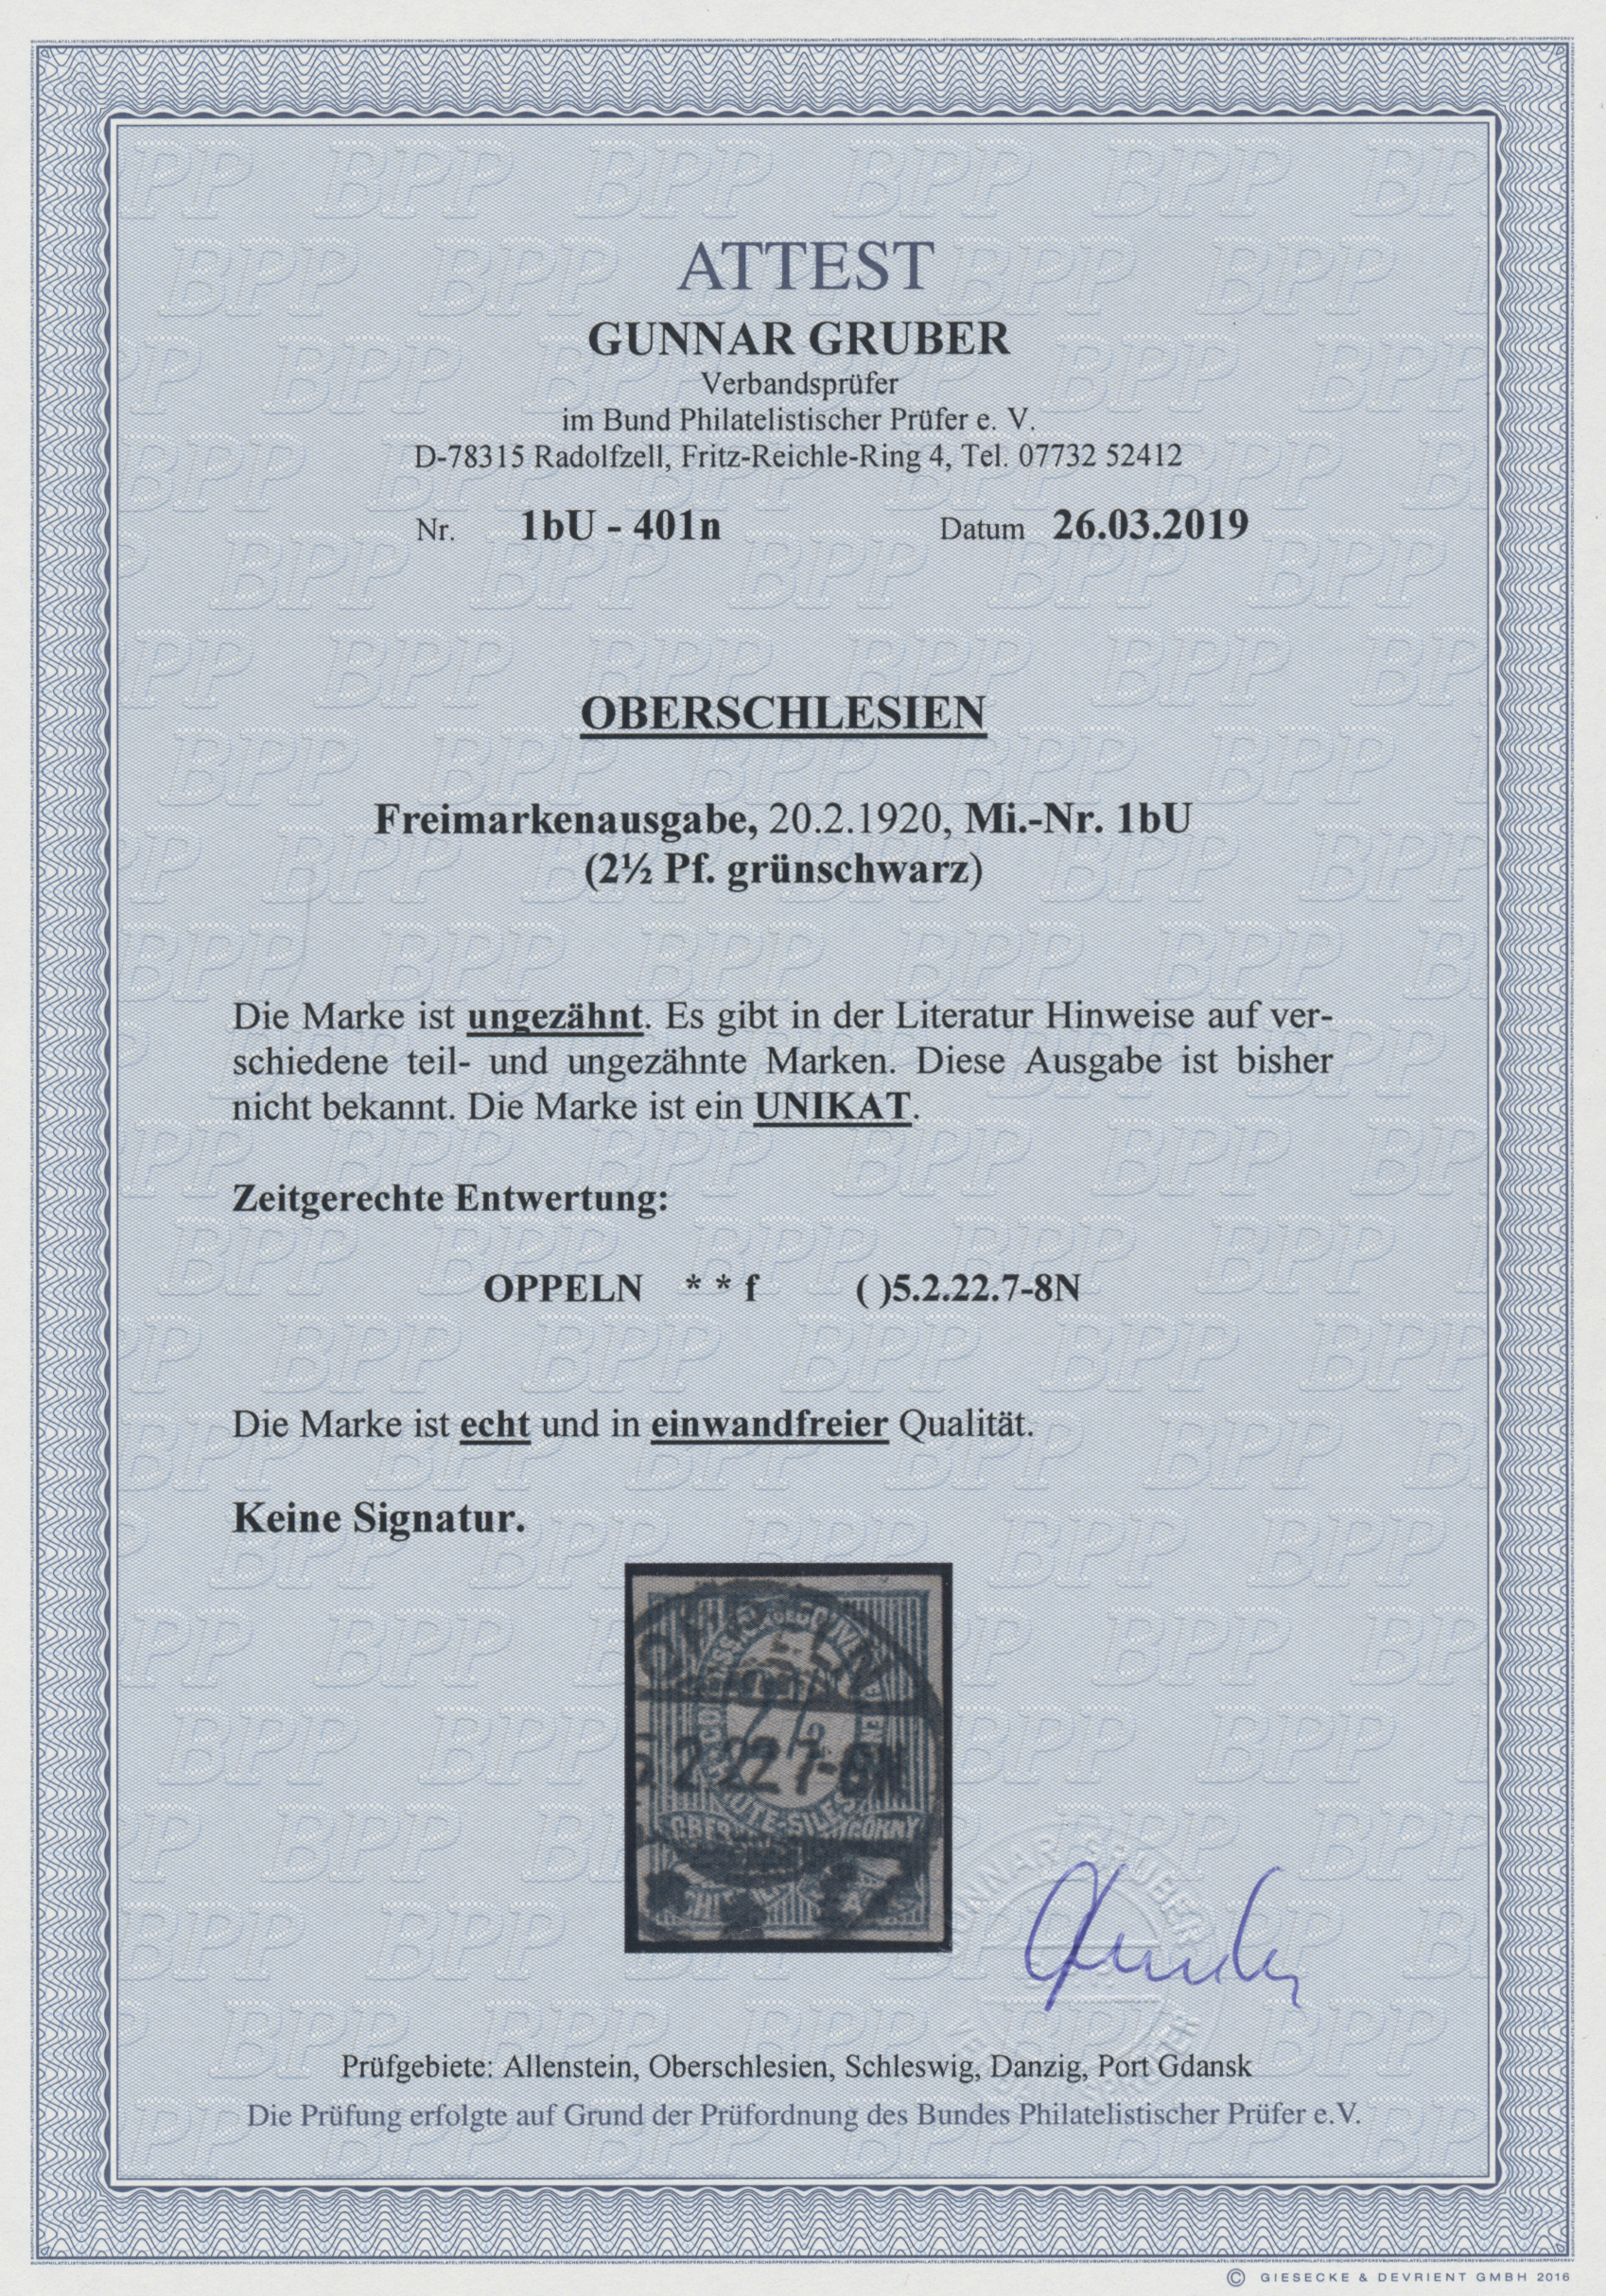 Lot 5272 - Deutsche Abstimmungsgebiete: Oberschlesien  -  Auktionshaus Christoph Gärtner GmbH & Co. KG 54th AUCTION - Day 3